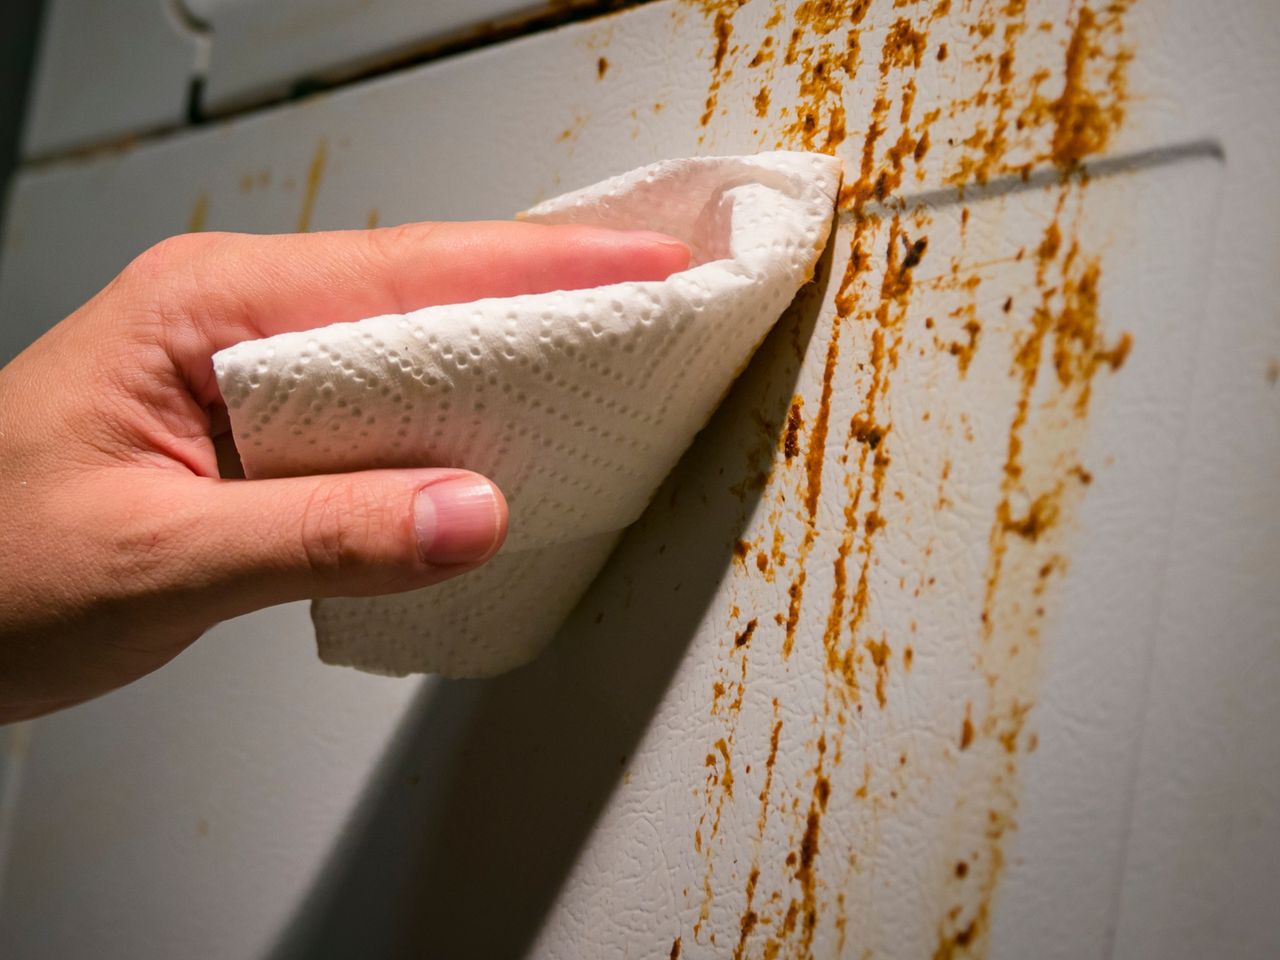 Gdzie wyrzucać papierowe ręczniki? Większość z nas popełnia błąd